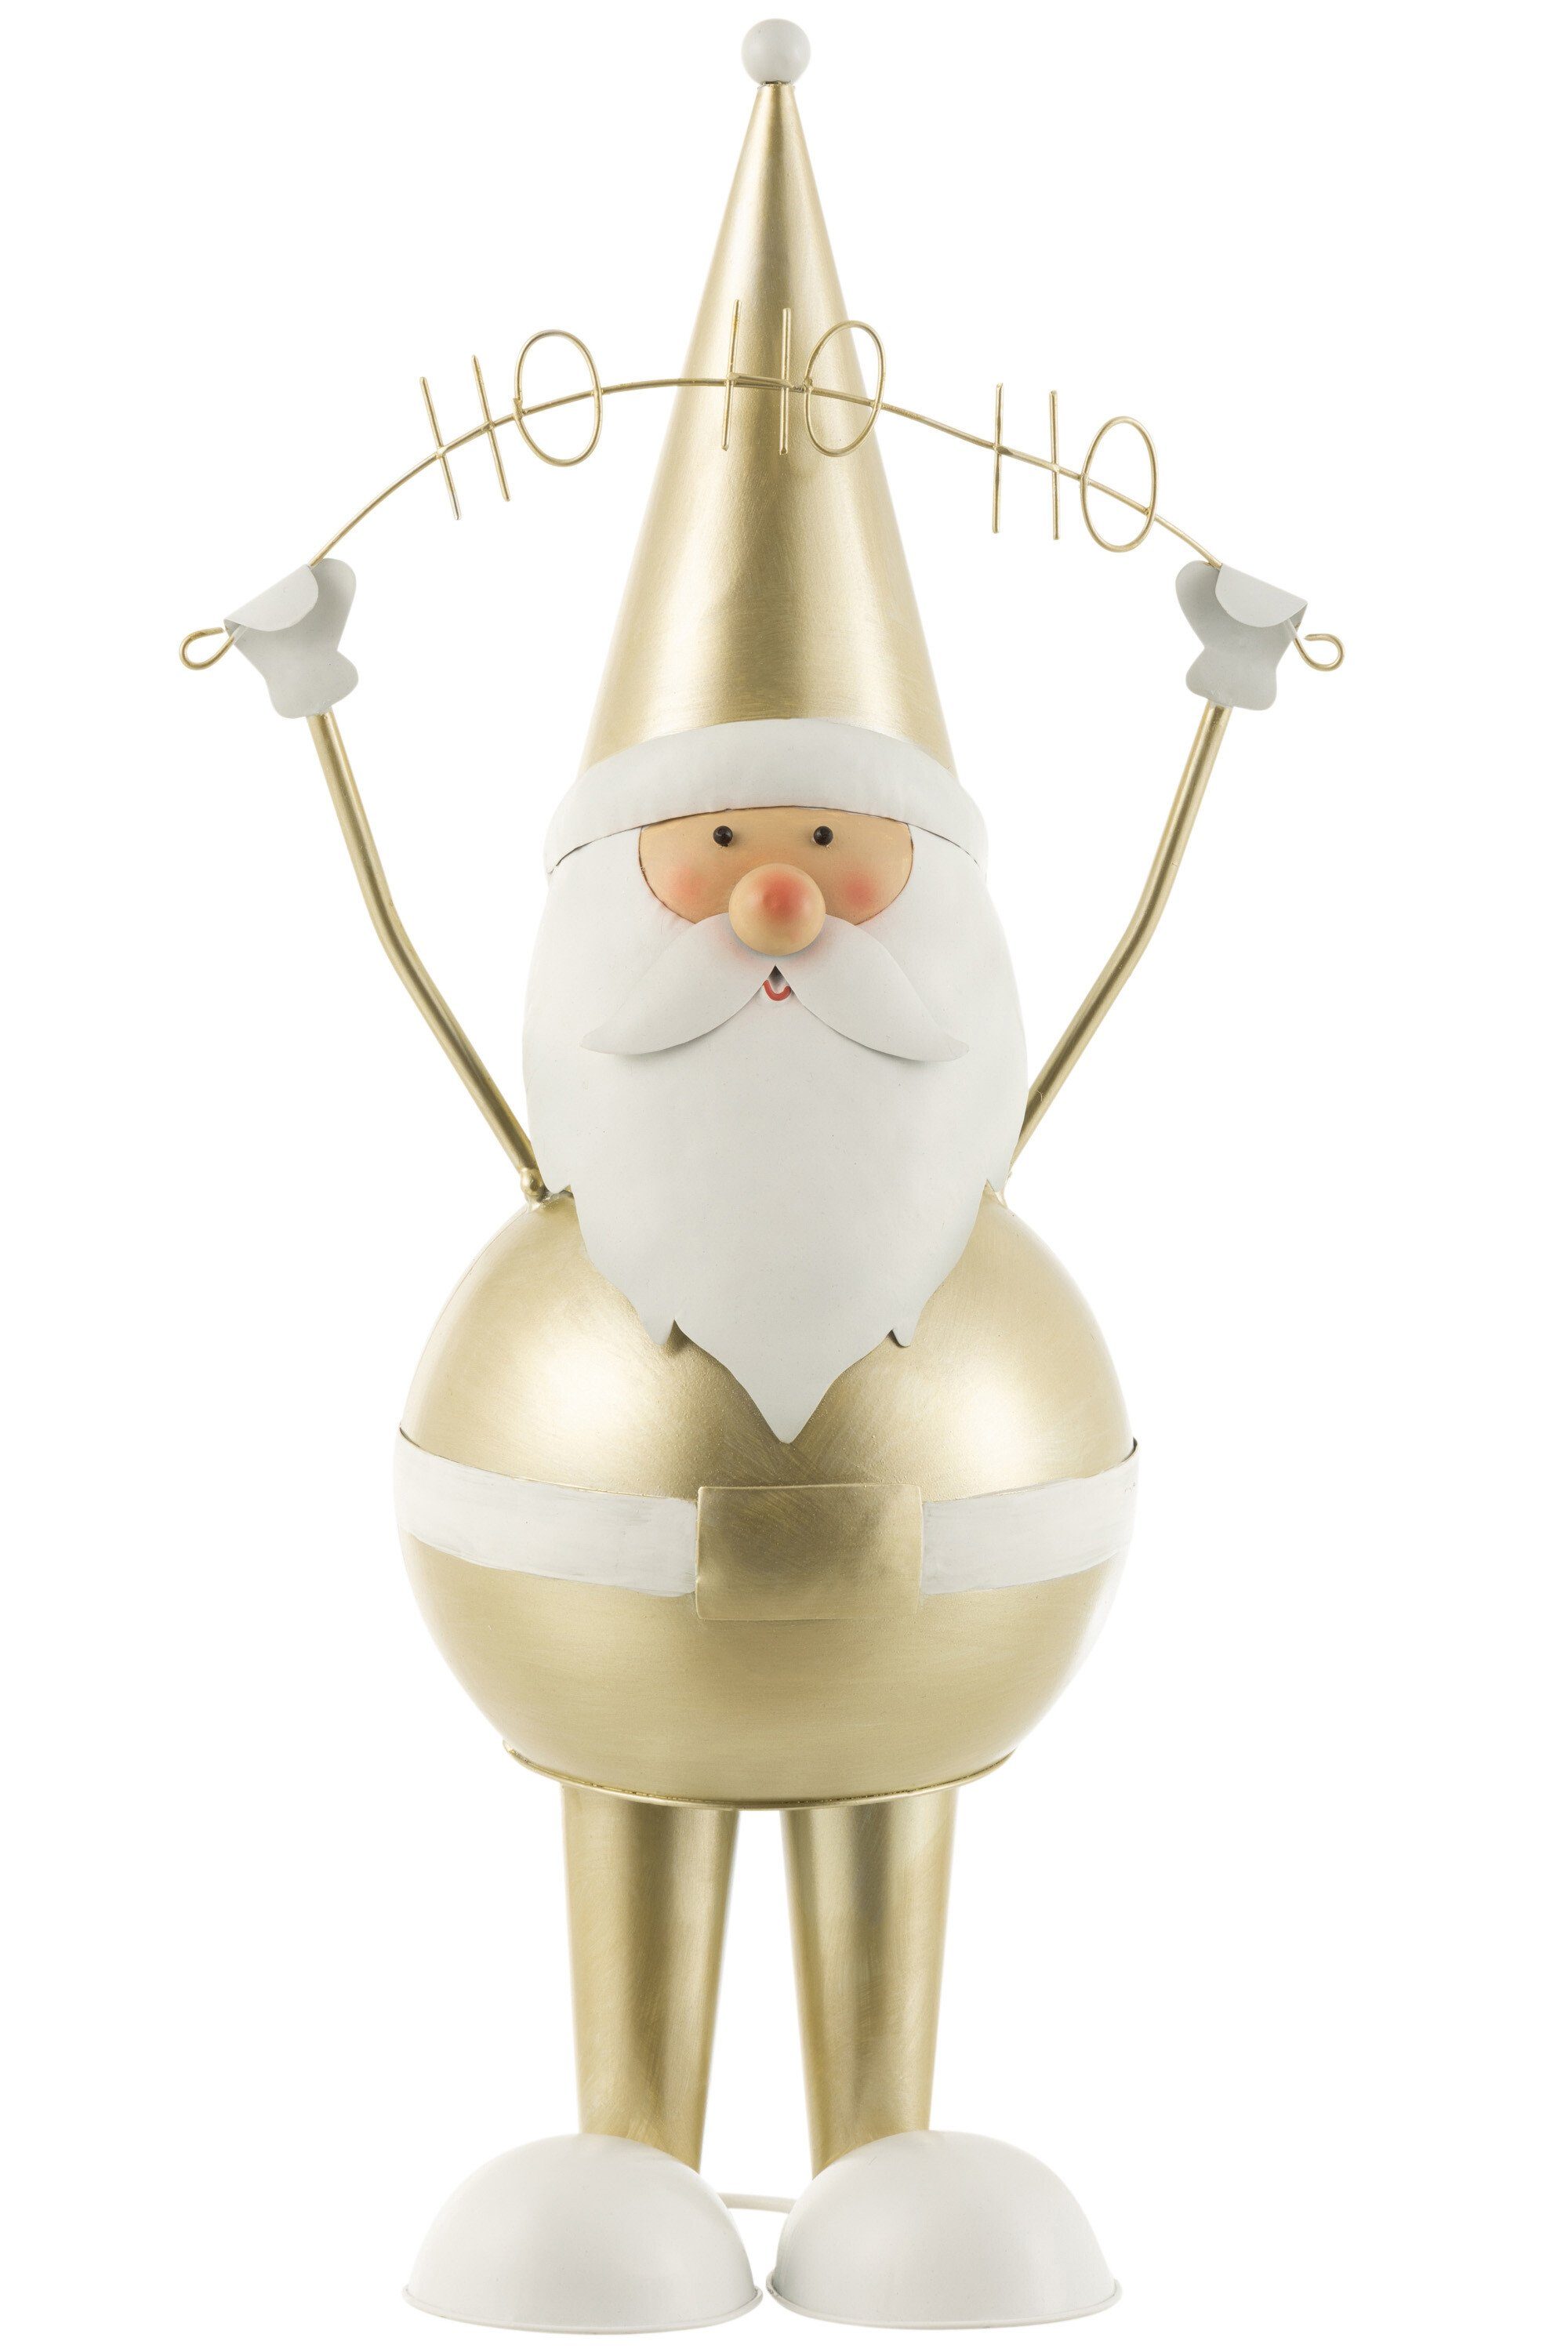 MF Weihnachtsfigur Weihnachtsmann "Hohoho" in Champagne – Elegante Metallskulptur